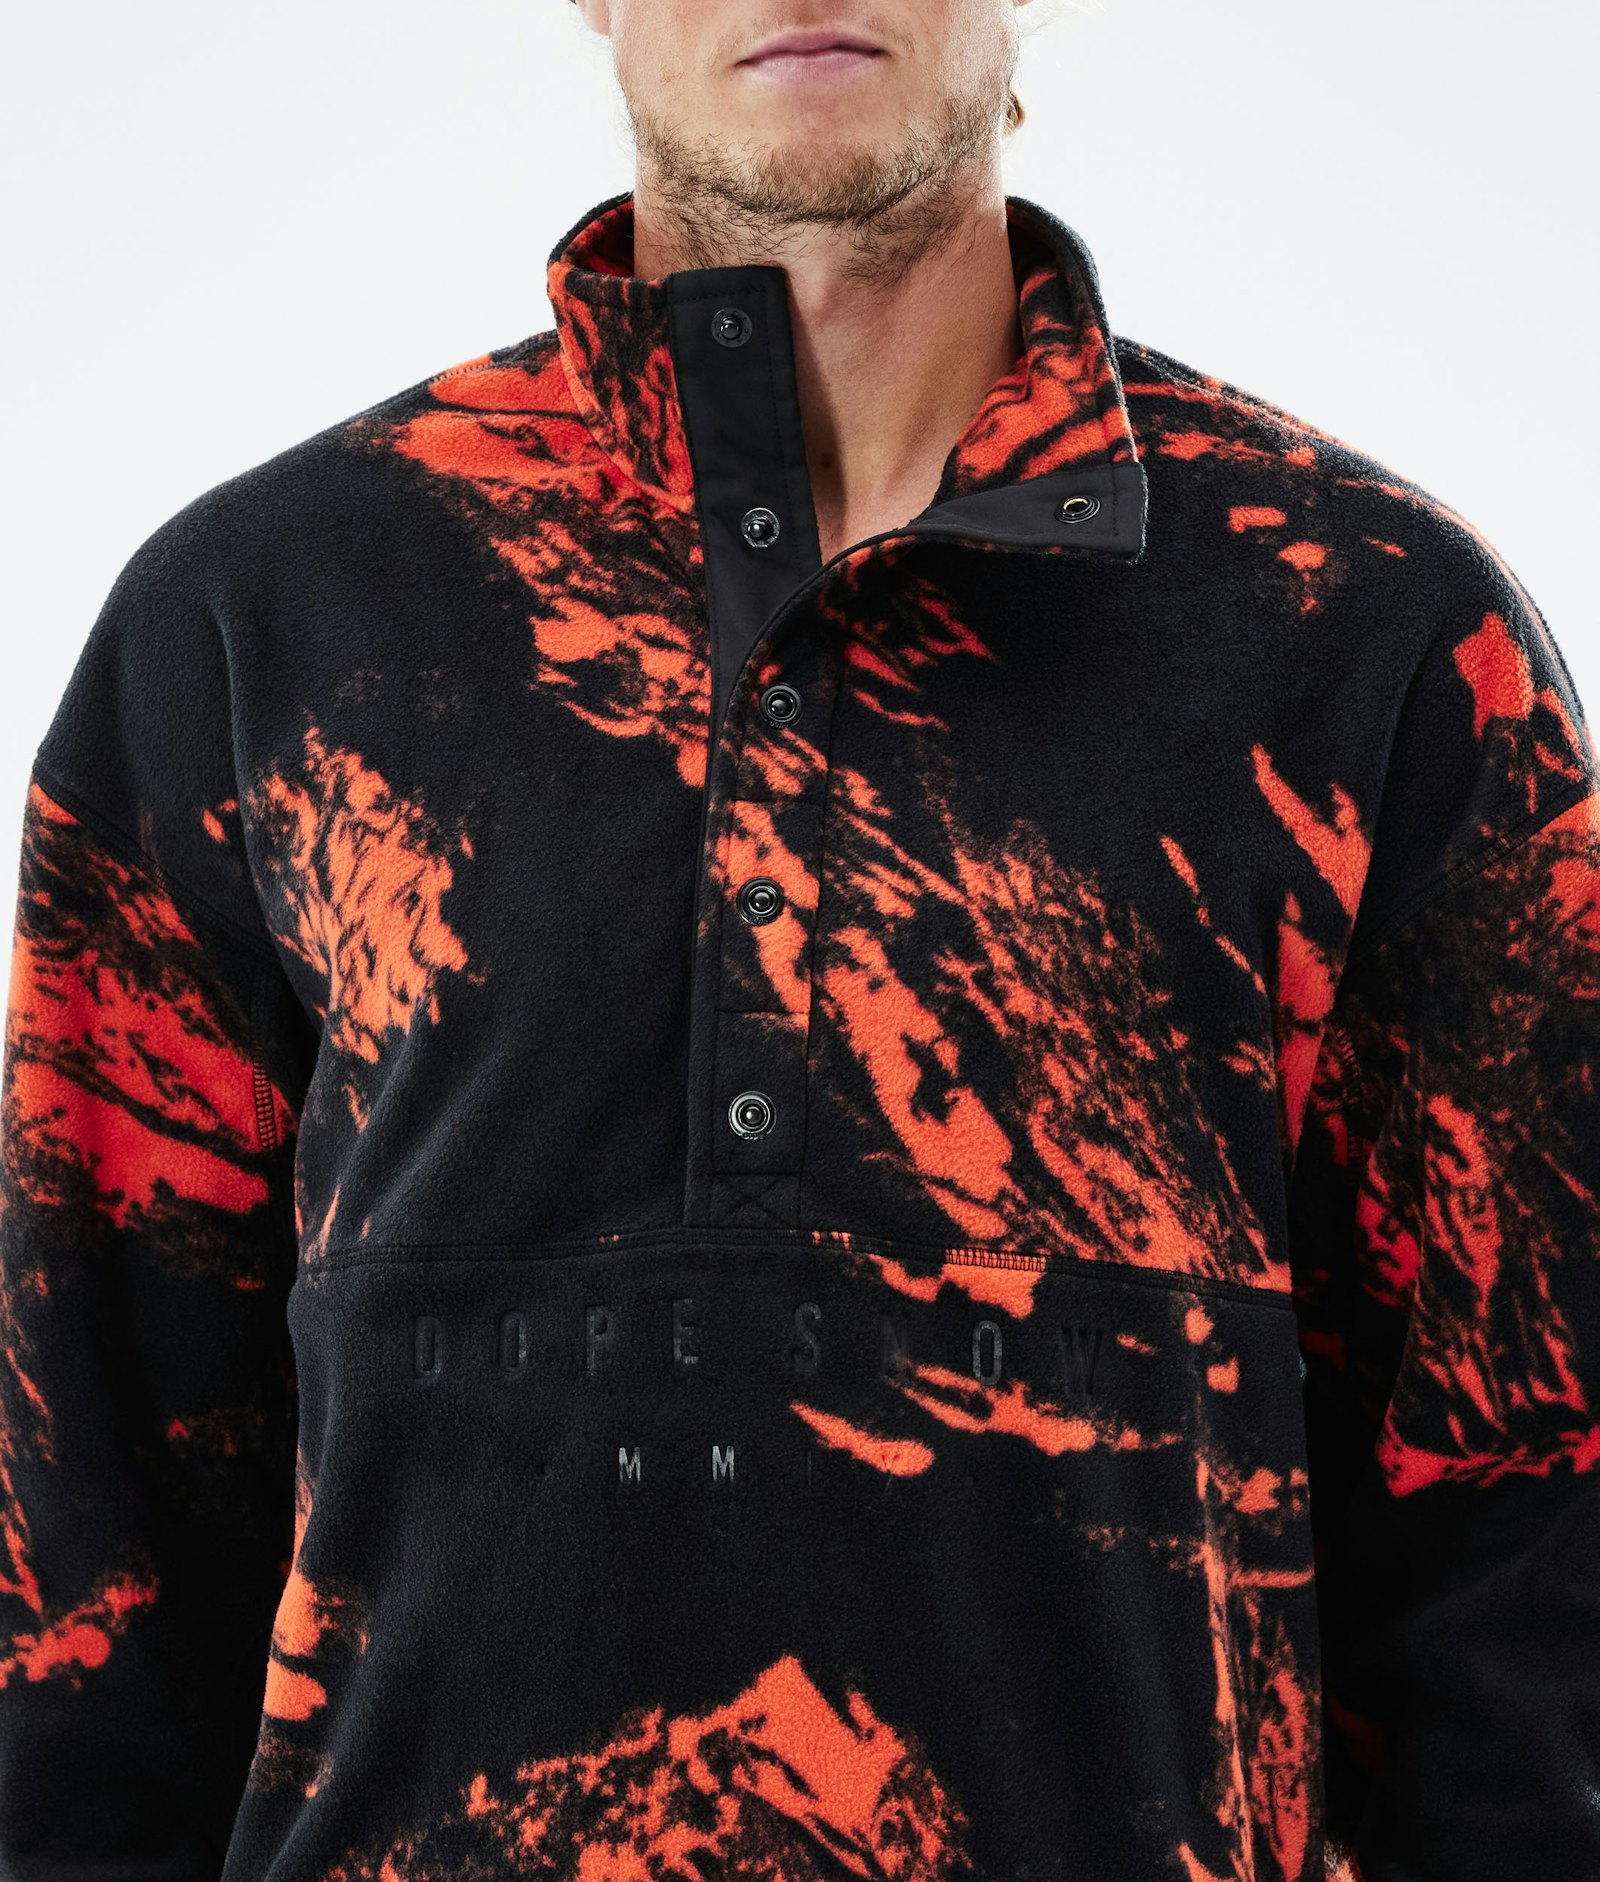 Comfy 2021 Fleece Sweater Men Paint Orange